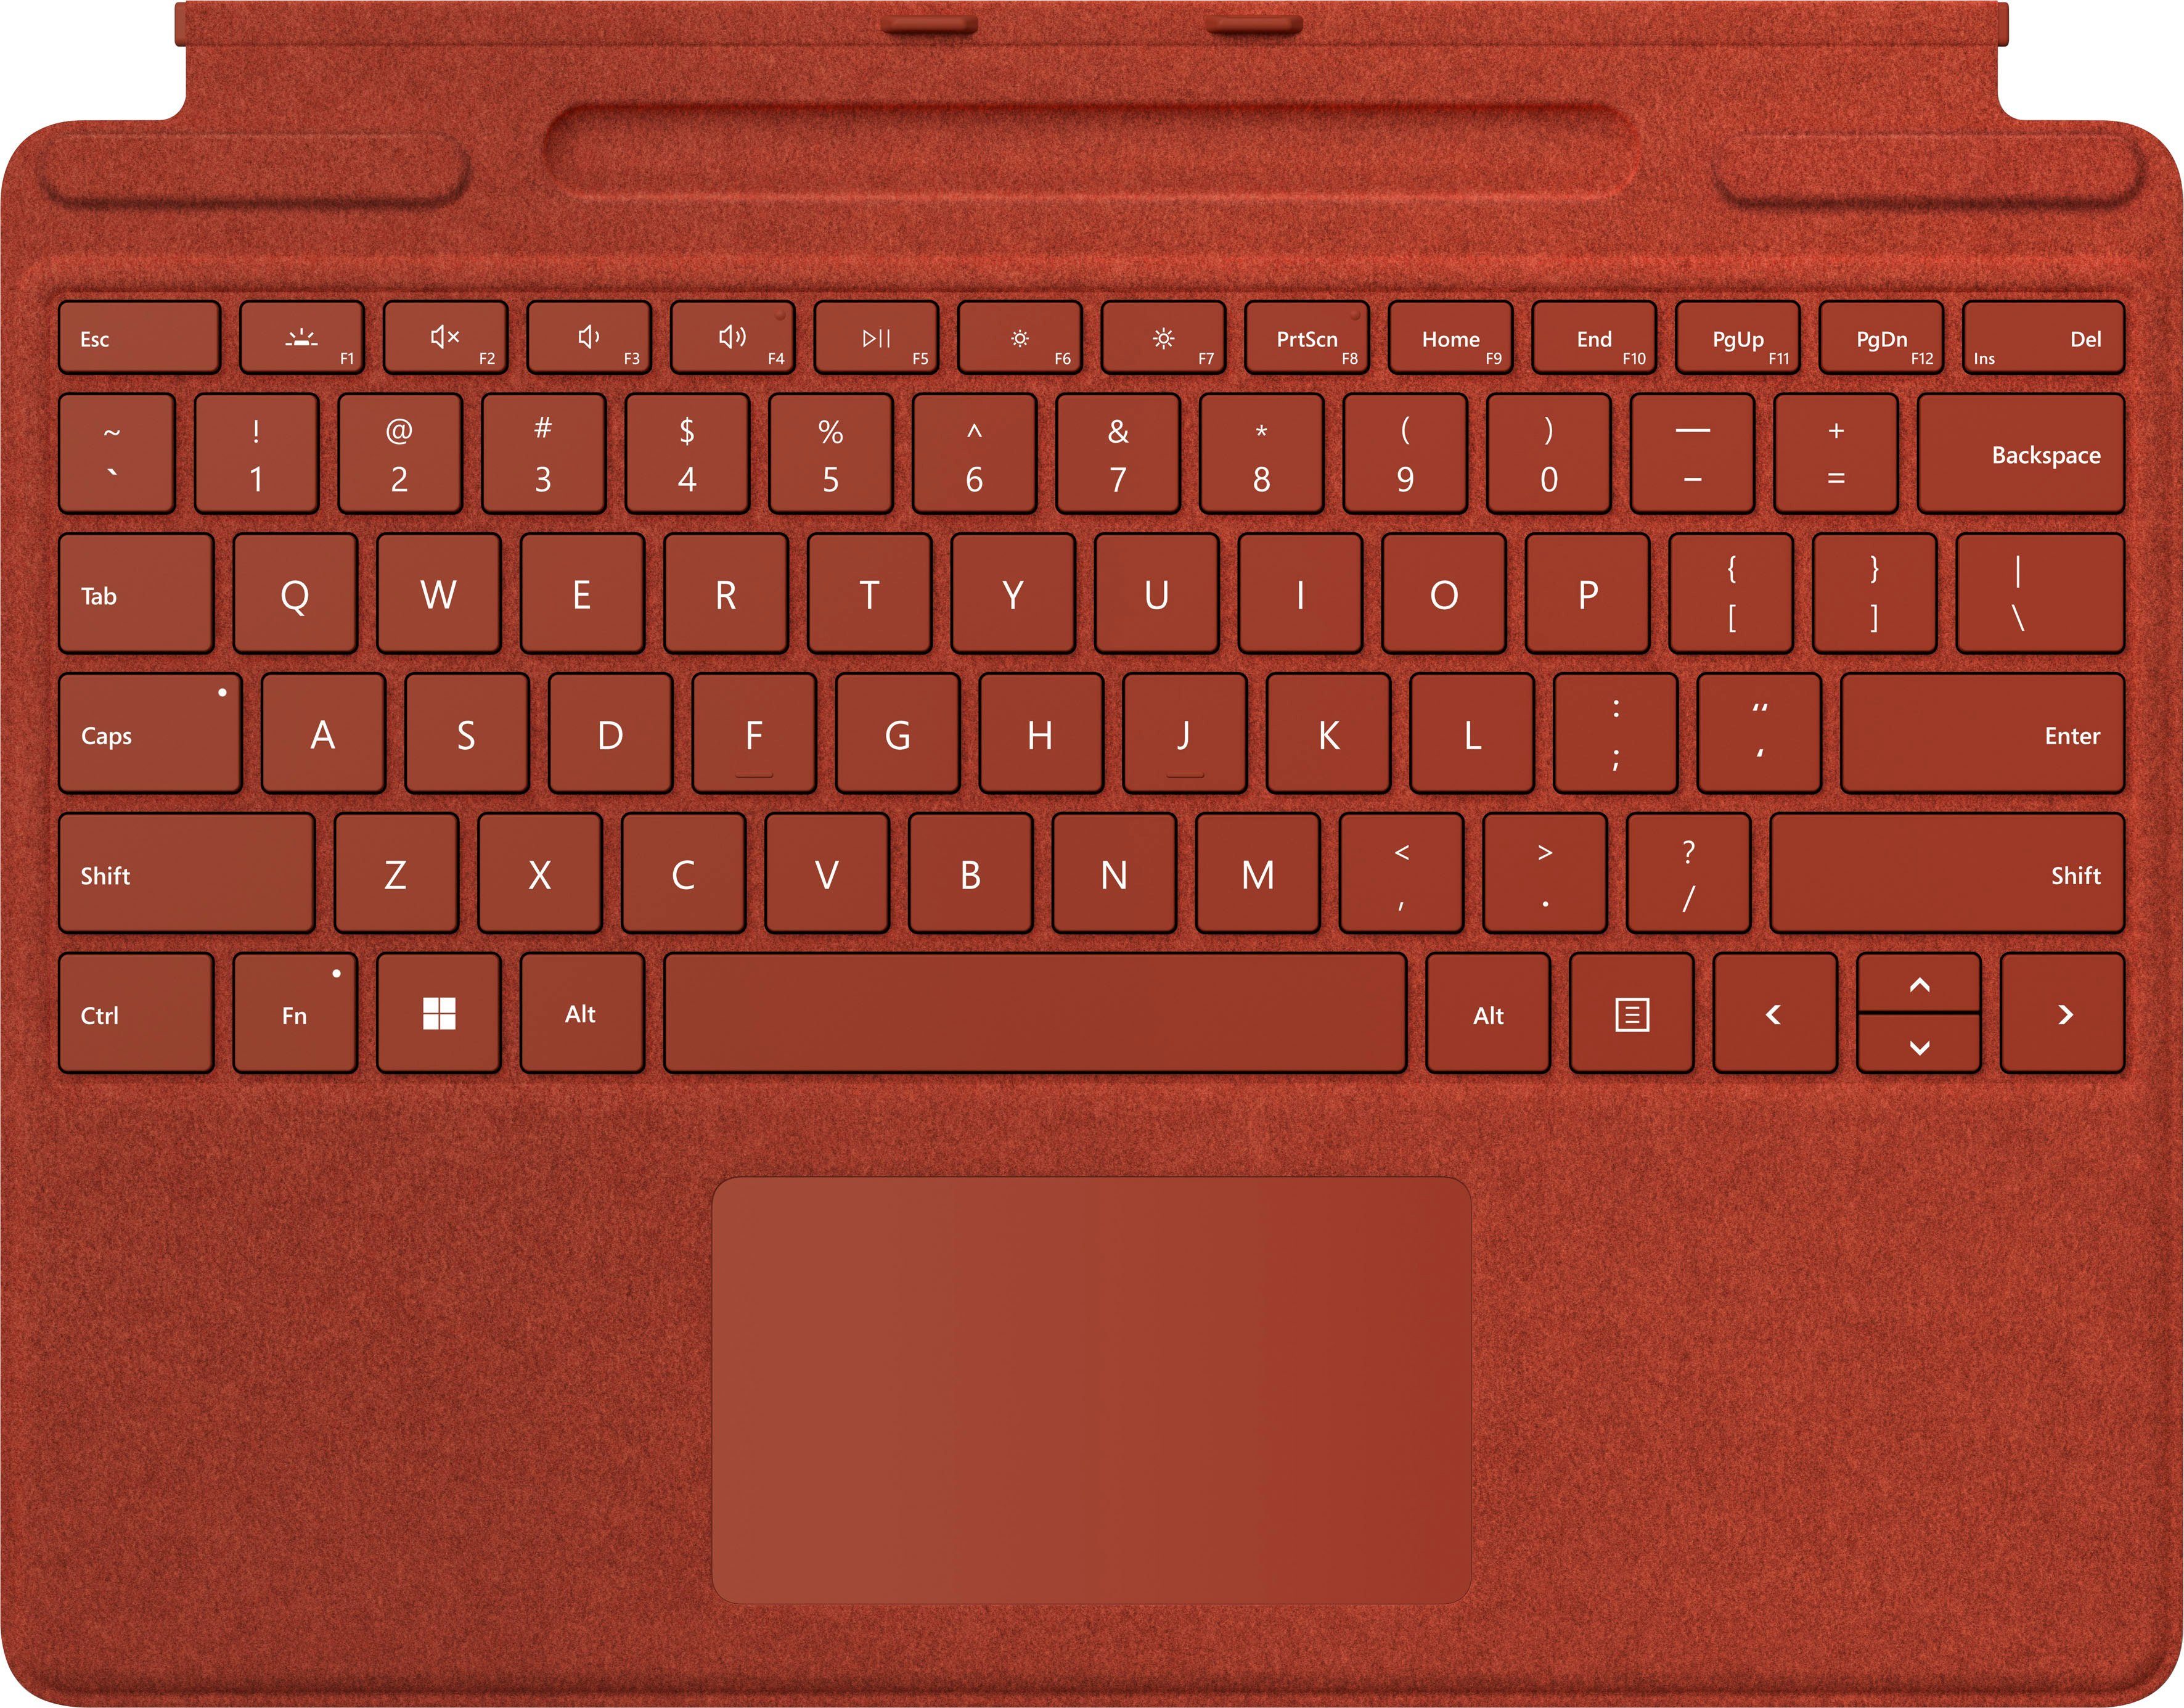 8XA-00025 Surface Tastatur Keyboard Microsoft Rot Signature mit Touchpad) Pro (Tastatur